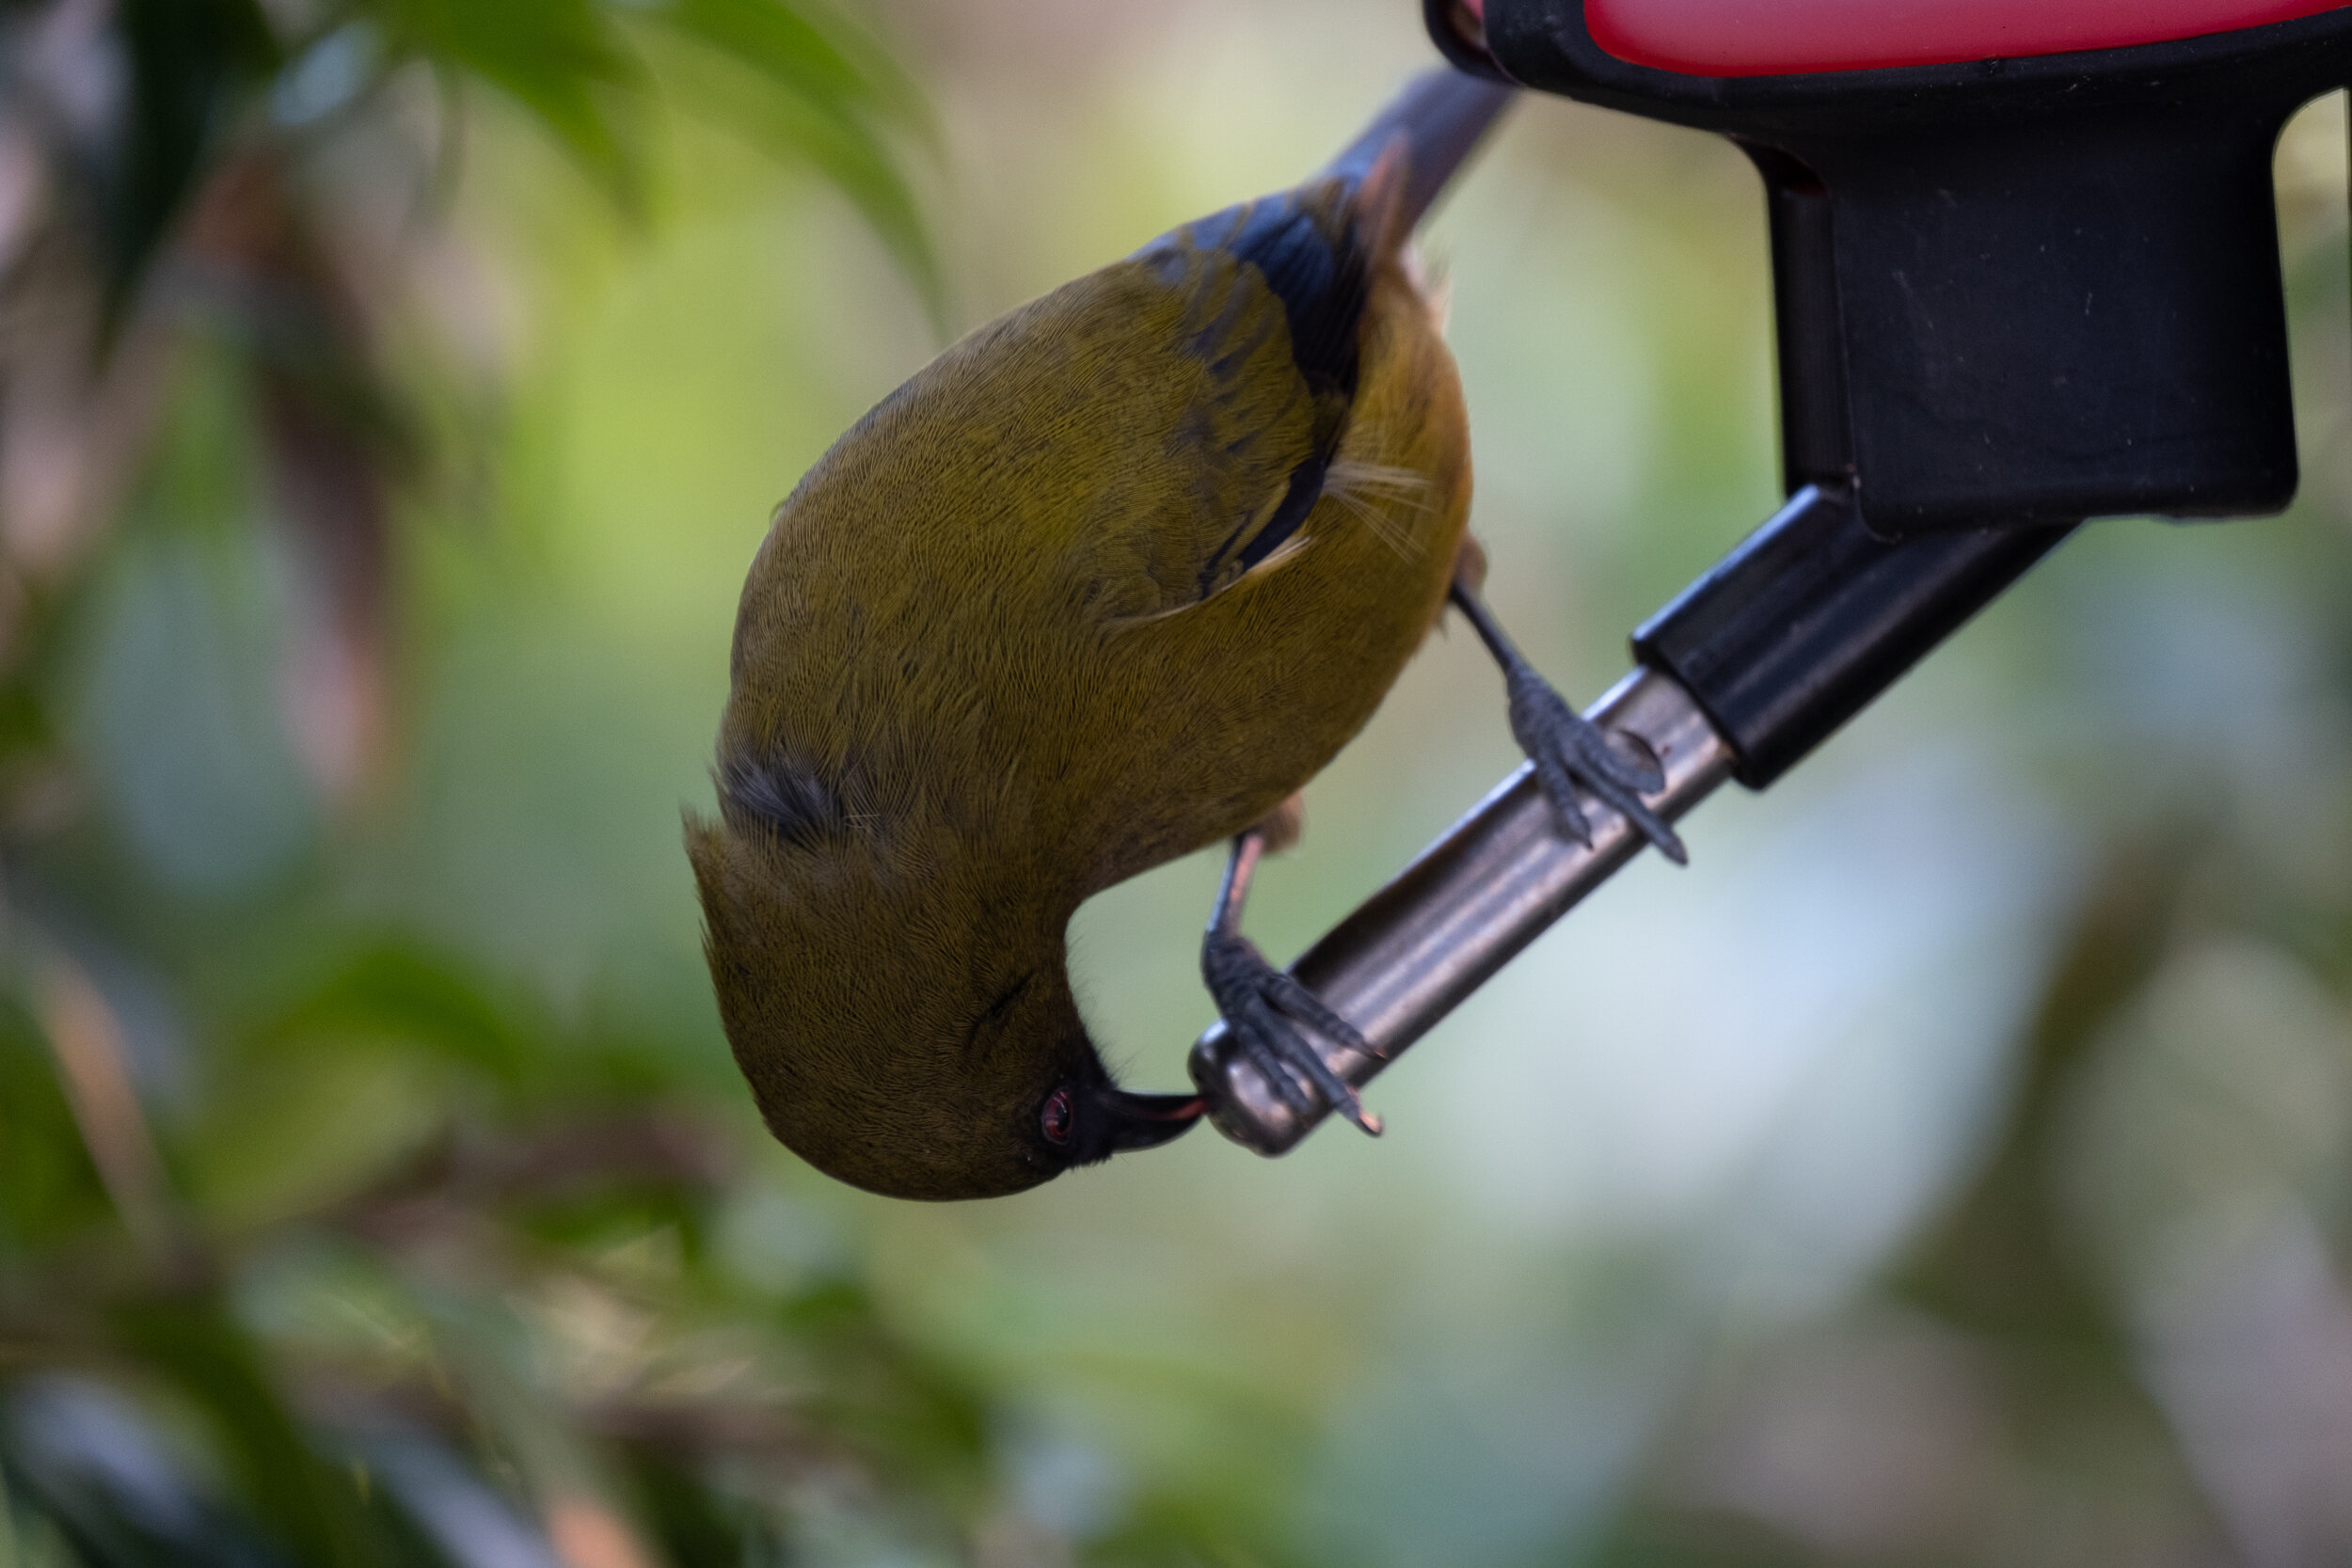 How do NZ garden birds build their nests? — Kohab